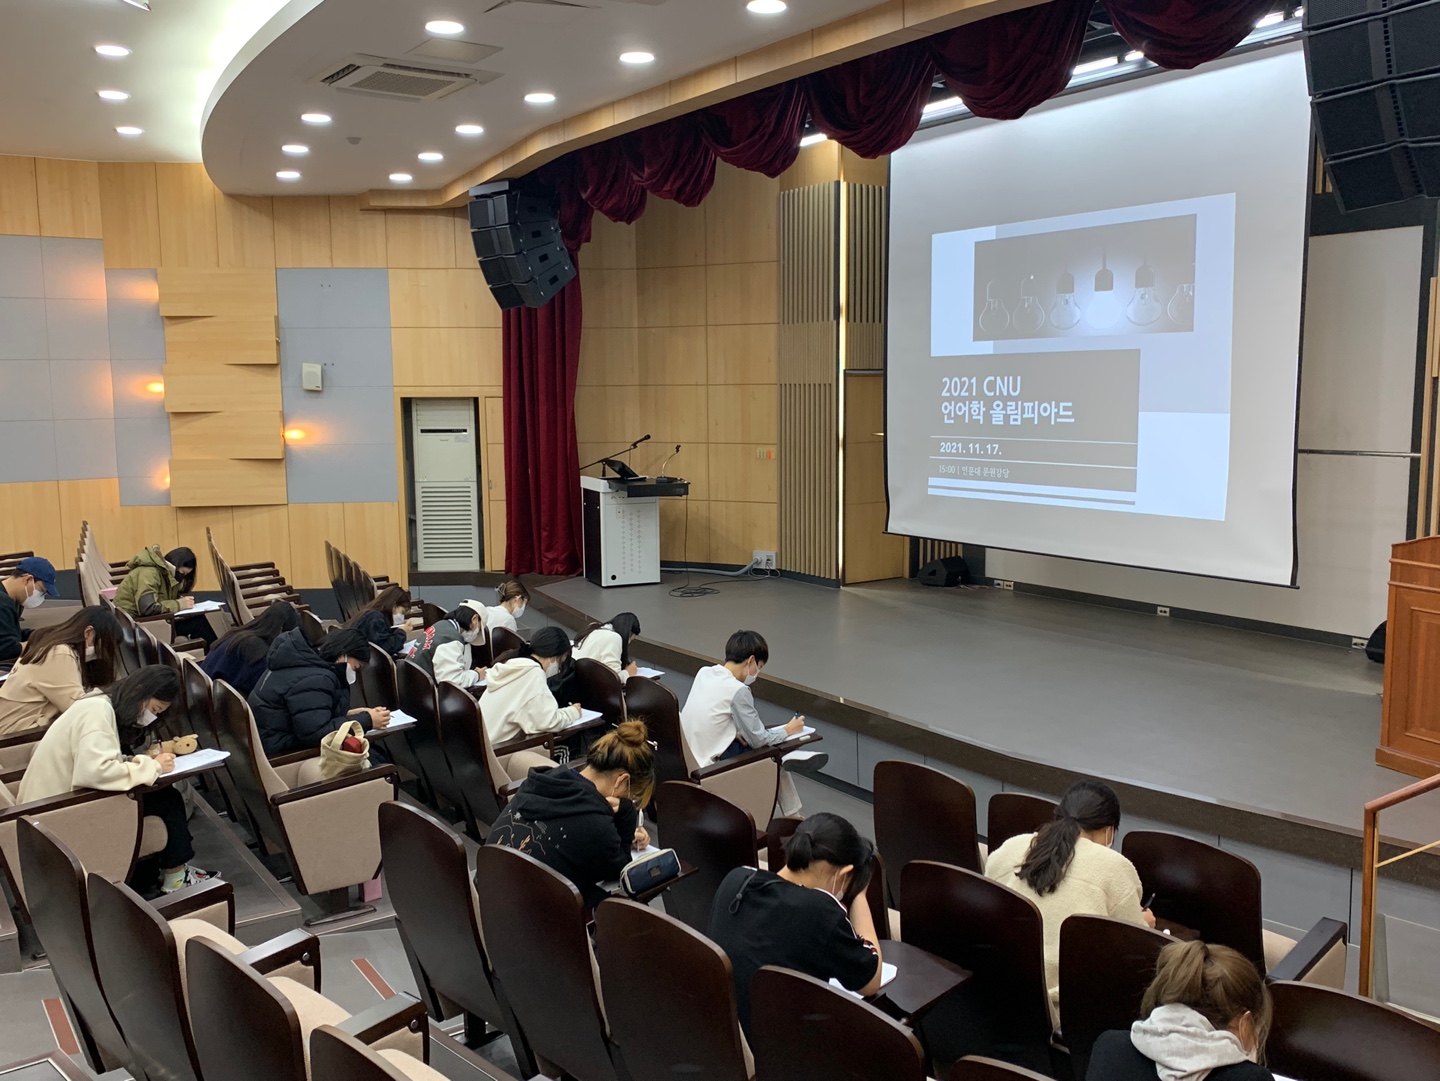 언어학과, ‘2021 CNU 언어학 올림피아드’ 개최 사진